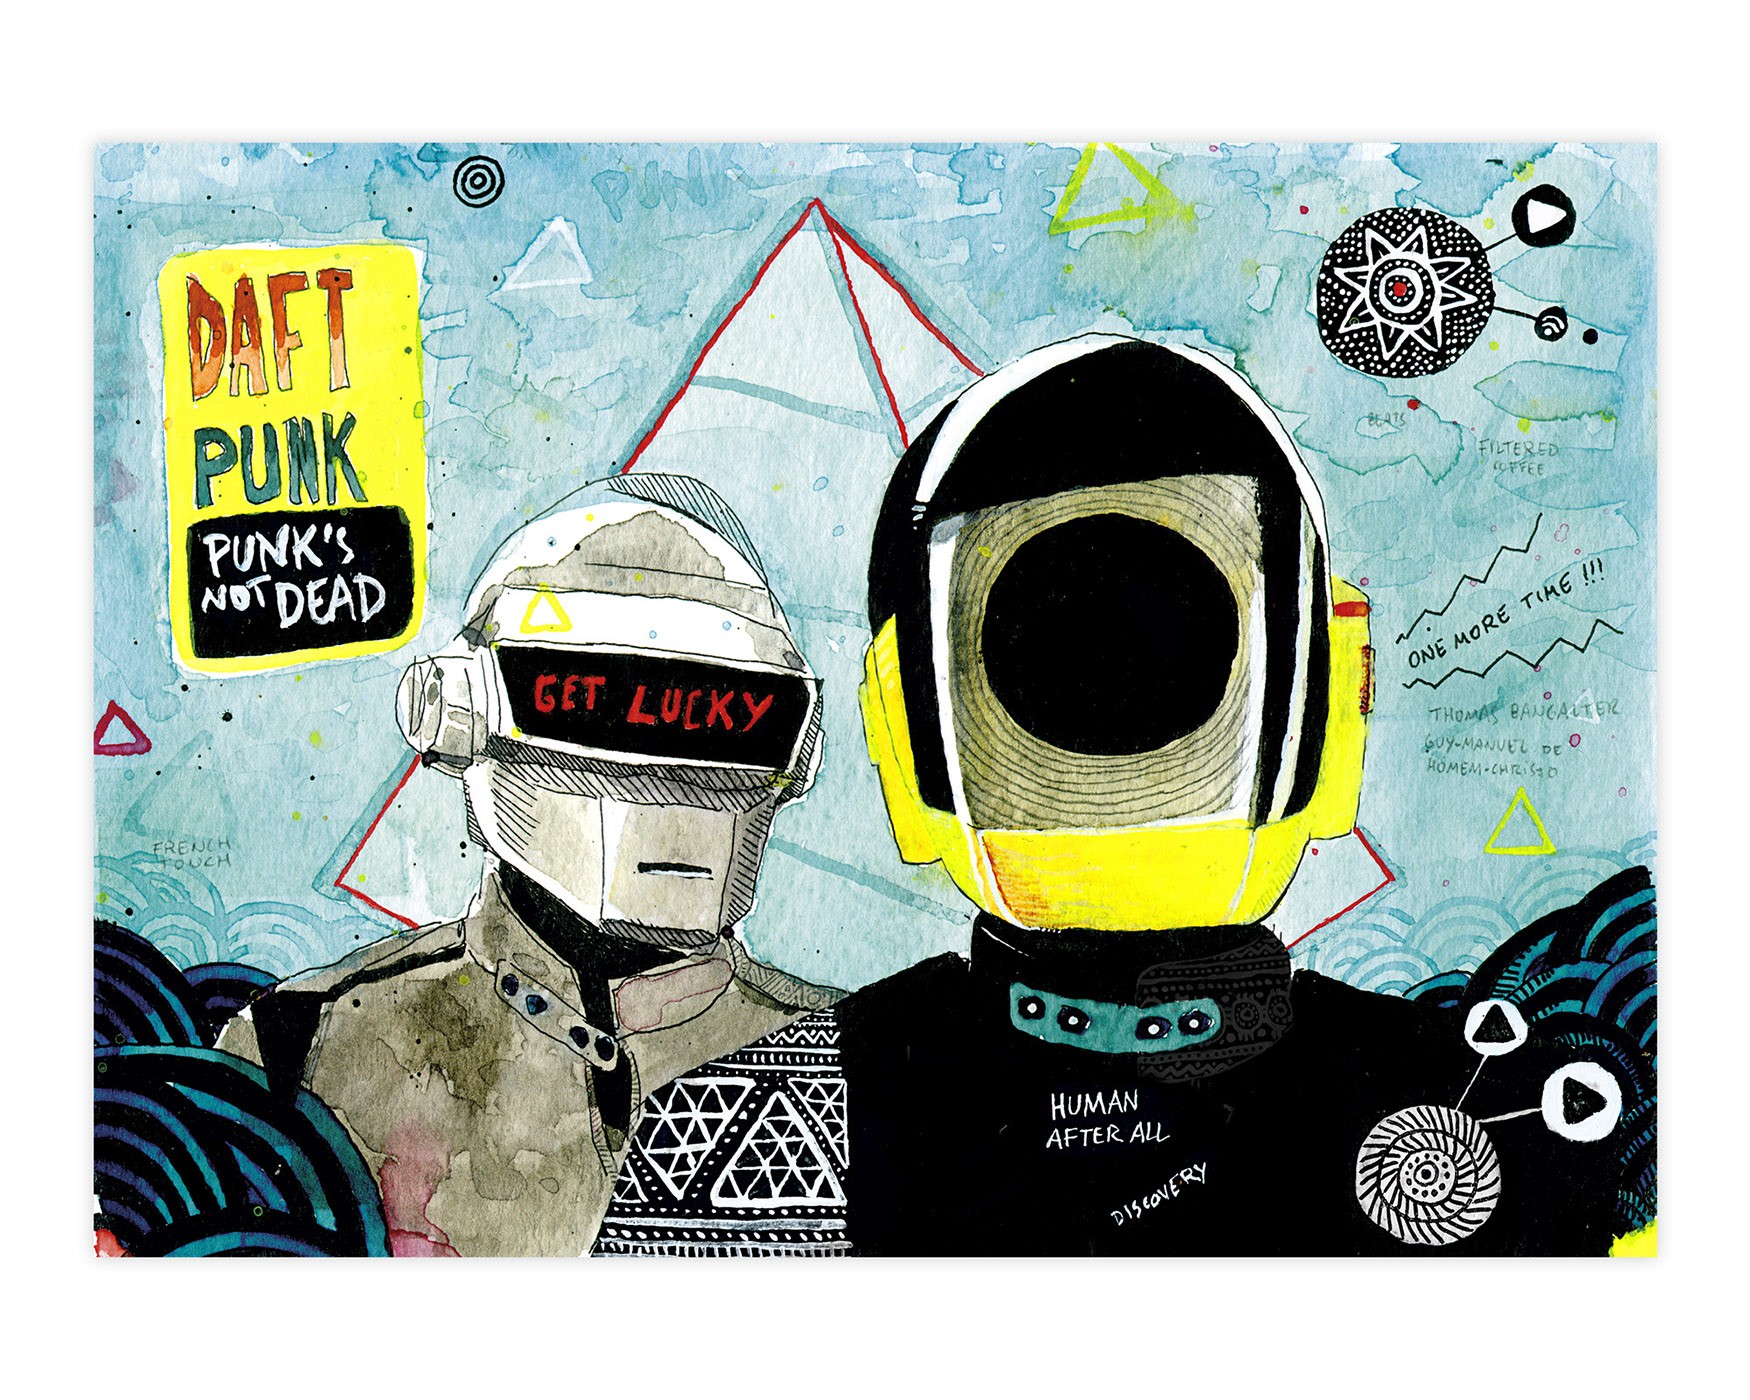 Láminas y pósters de Daft Punk. Ilustración original y exclusiva realizada en tinta y acuarela con un retrato de la banda francesa de música electrónica. Dibujo disponible para comprar online.